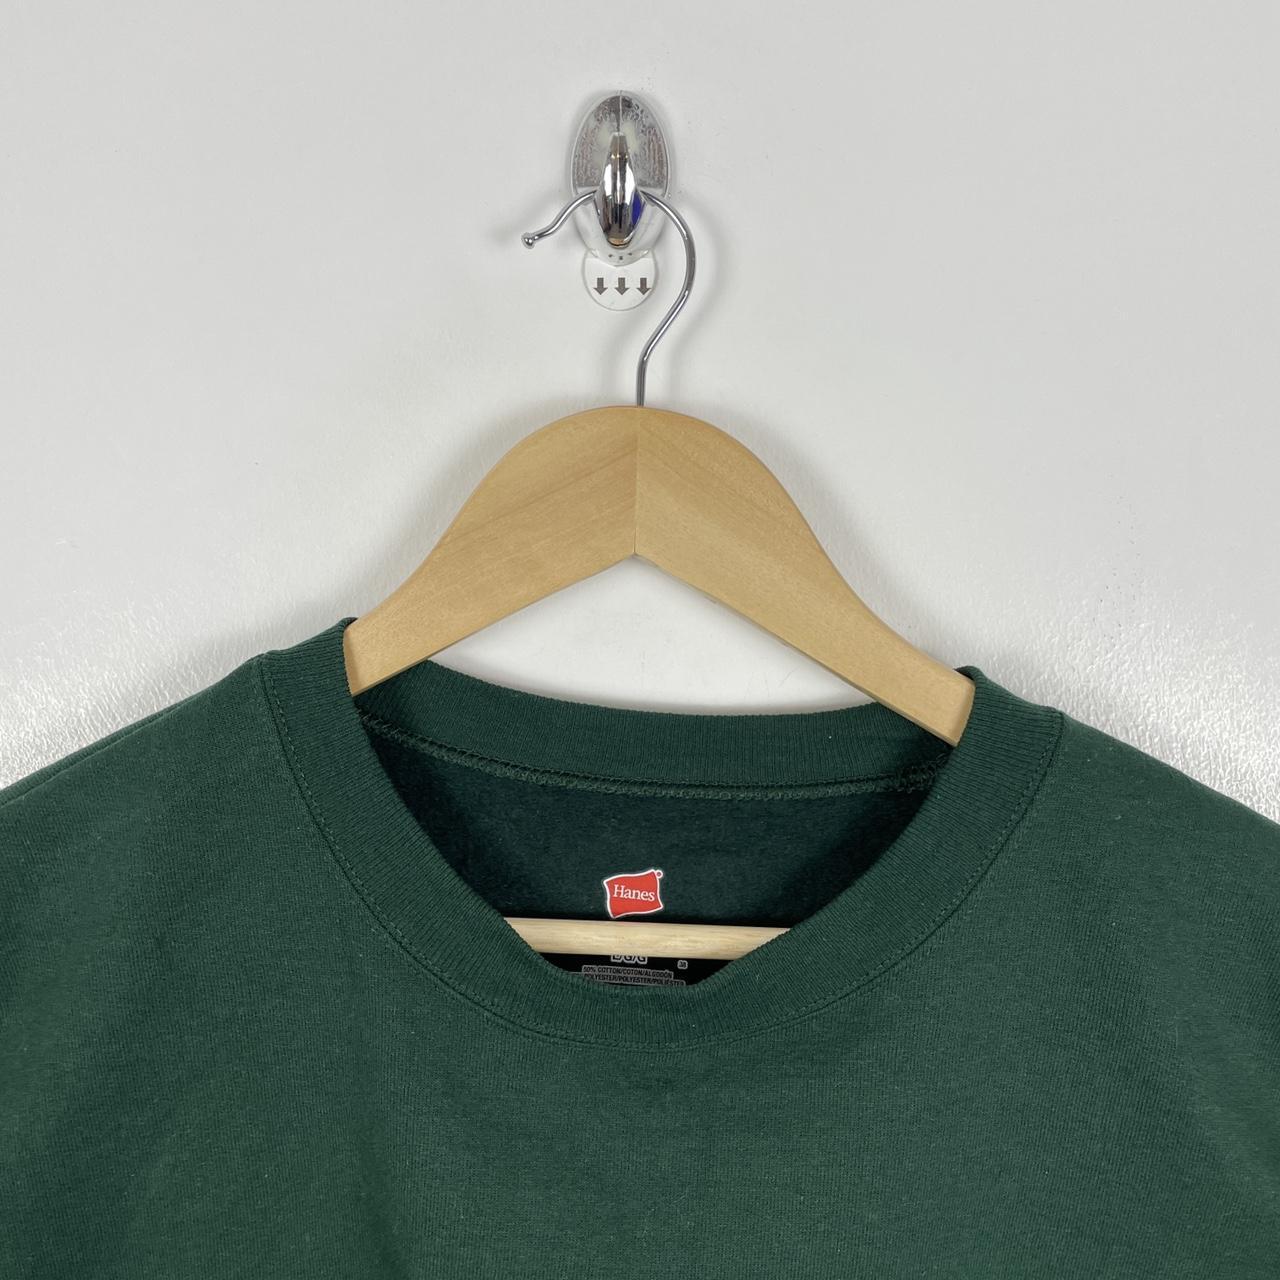 Blank Sweatshirt Hanes Green Colour Way Ladies... - Depop